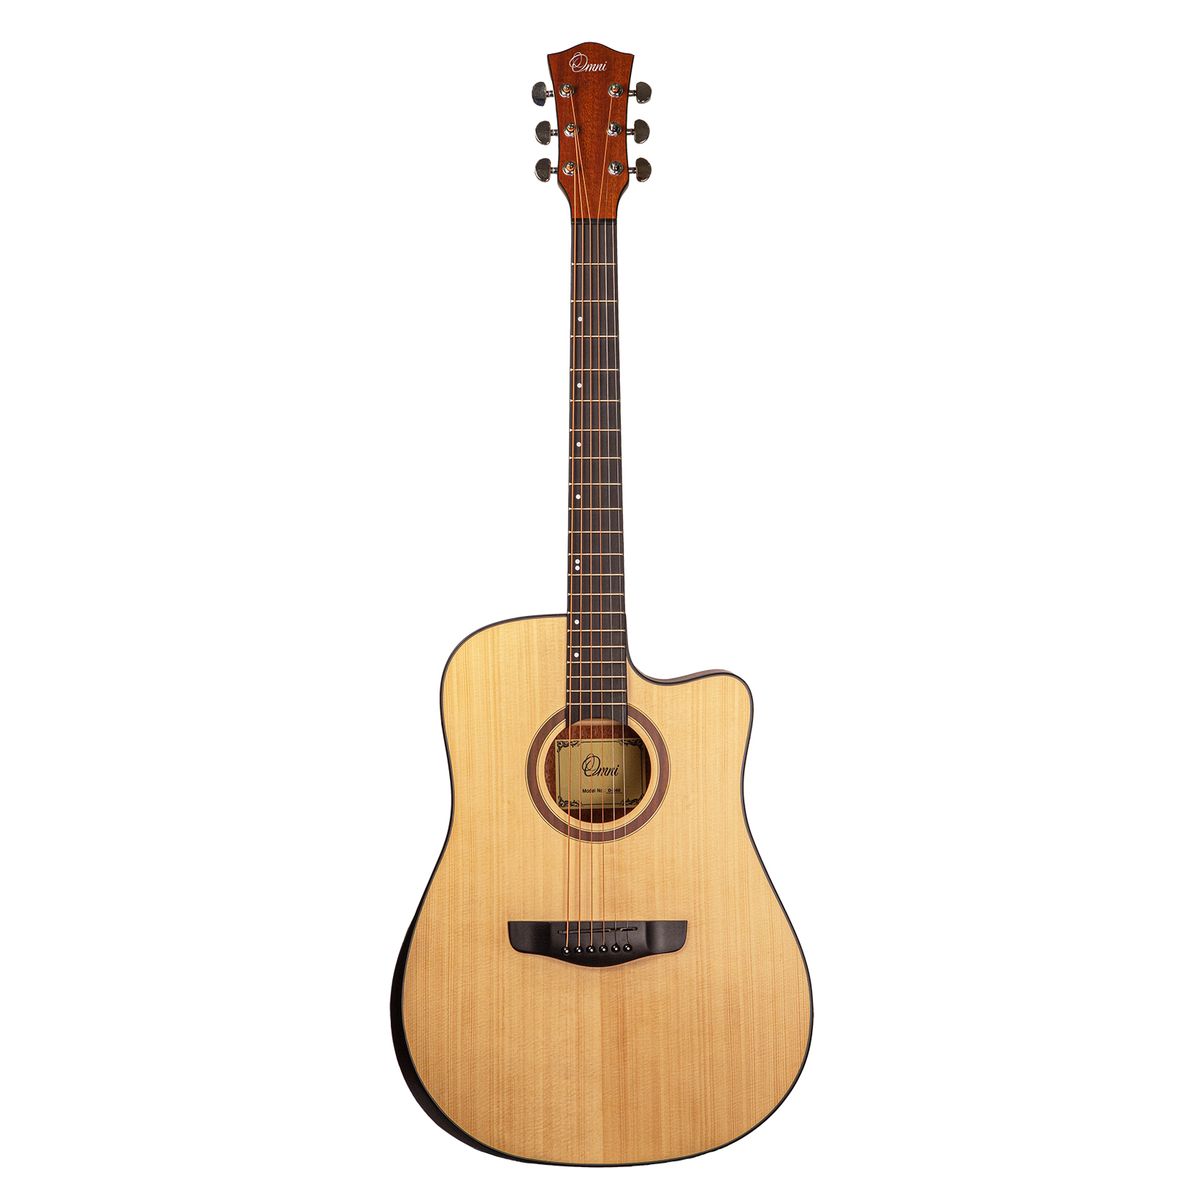 Omni D-560 акустическая гитара, дредноут, цвет натуральный